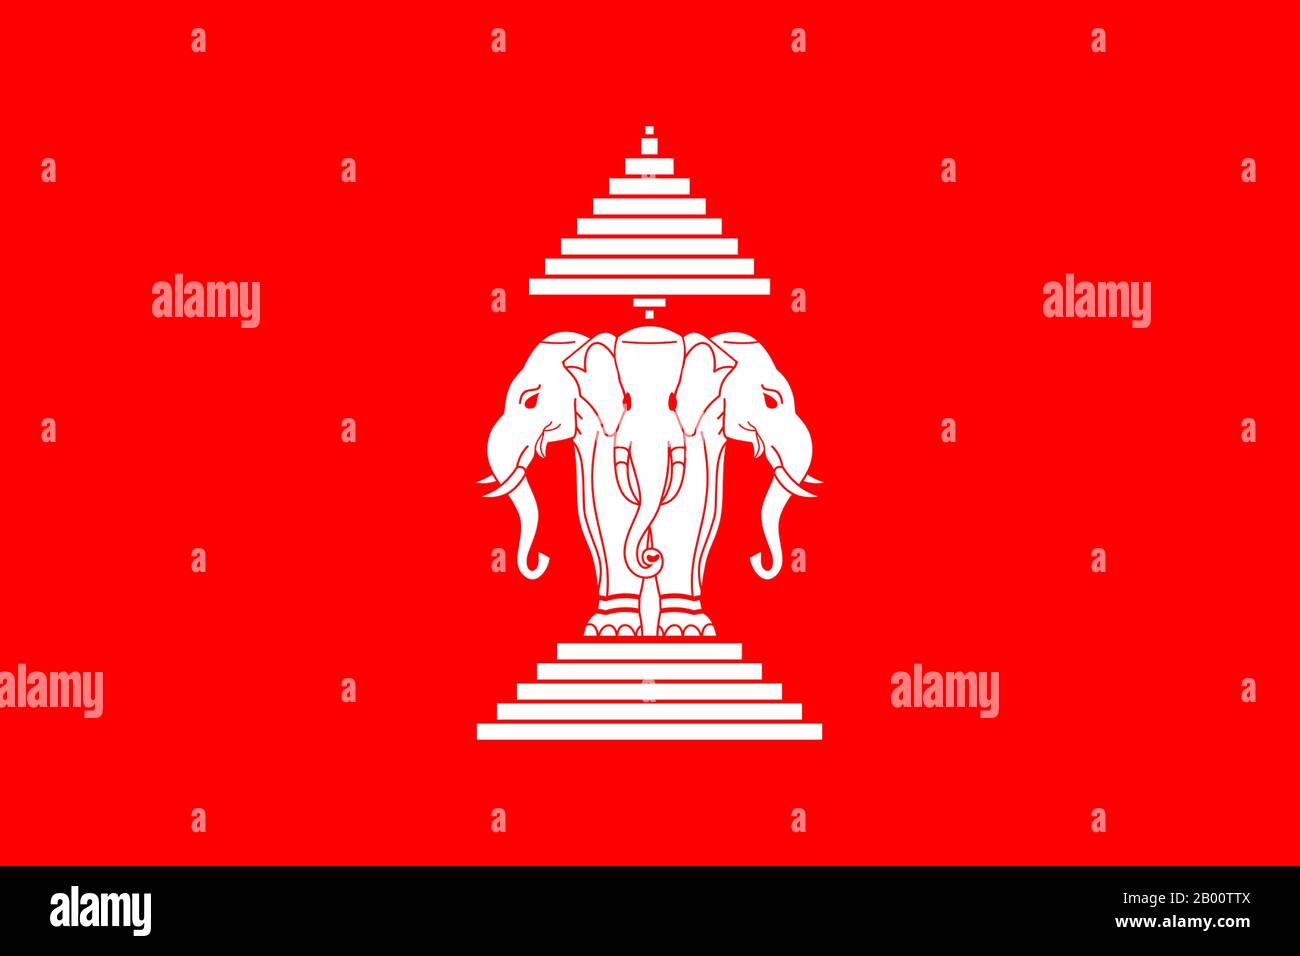 Laos: Flagge des Königreichs Laos (1952-1975). Von 1952 bis zum Sturz der königlichen Regierung im Jahr 1975 hatte das Land eine rote Flagge, mit einem weißen dreiköpfigen Elefanten (der gott Erawan) in der Mitte. Auf dem Elefanten befindet sich ein neun-gefalteter Regenschirm, während der Elefant selbst auf einem fünfstufigen Sockel steht. Der weiße Elefant ist ein gemeinsames königliches Symbol in Südostasien, die drei Köpfe bezogen sich auf die drei ehemaligen Königreiche Vientiane, Luang Prabang und Champasak, die das Land gebildet. Der neungefaltete Regenschirm ist auch ein königliches Symbol, das vom Mt. Meru in der buddhistischen Kosmologie. Stockfoto